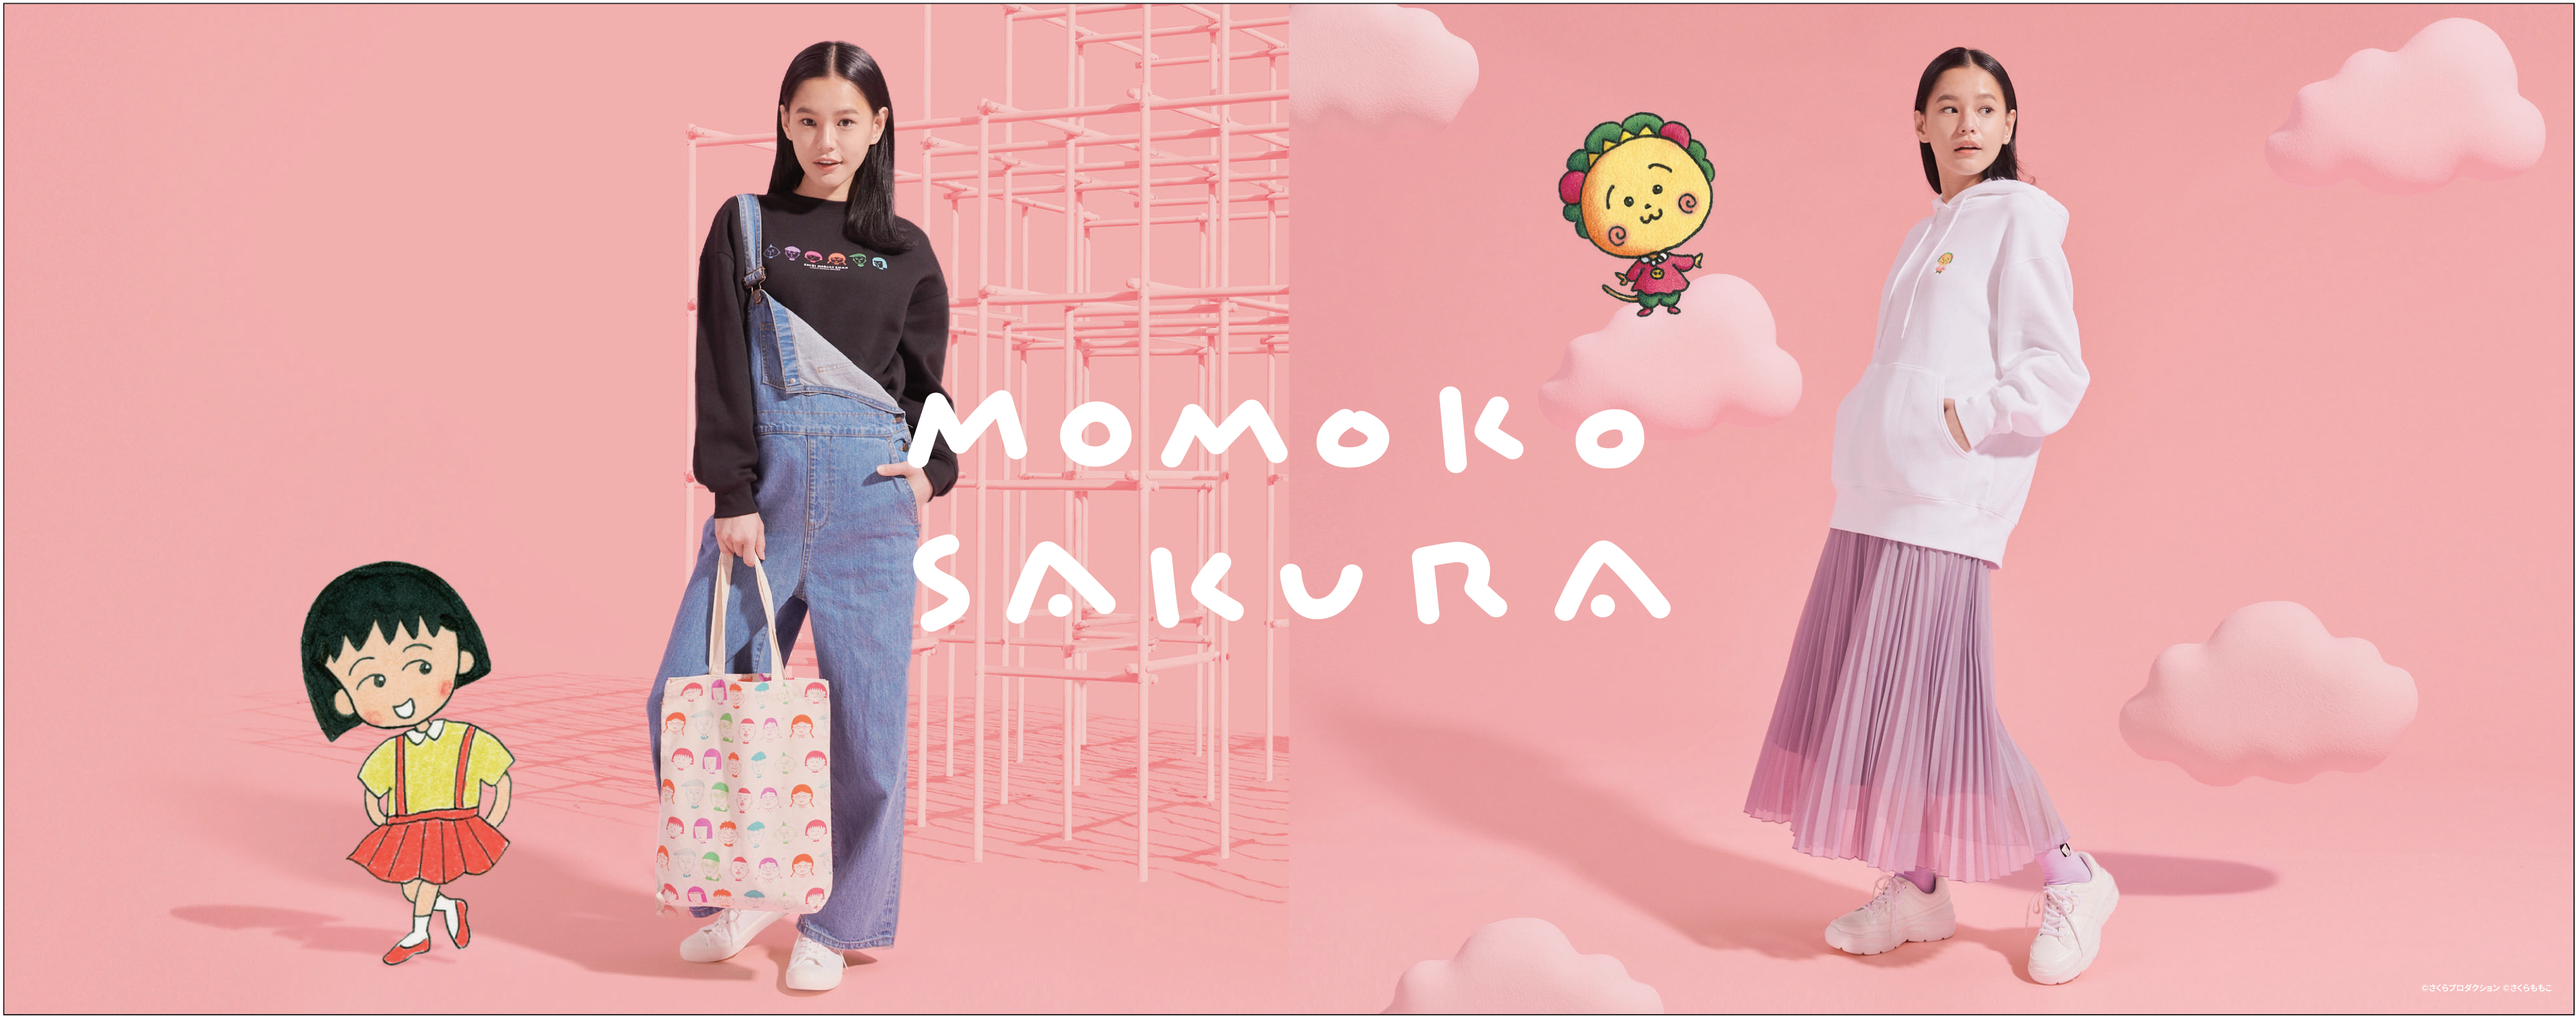 ちびまる子ちゃん と コジコジ がguとコラボレーション Momoko Sakuraコレクションを発表 21年1月1日 金 より販売開始 Newscast